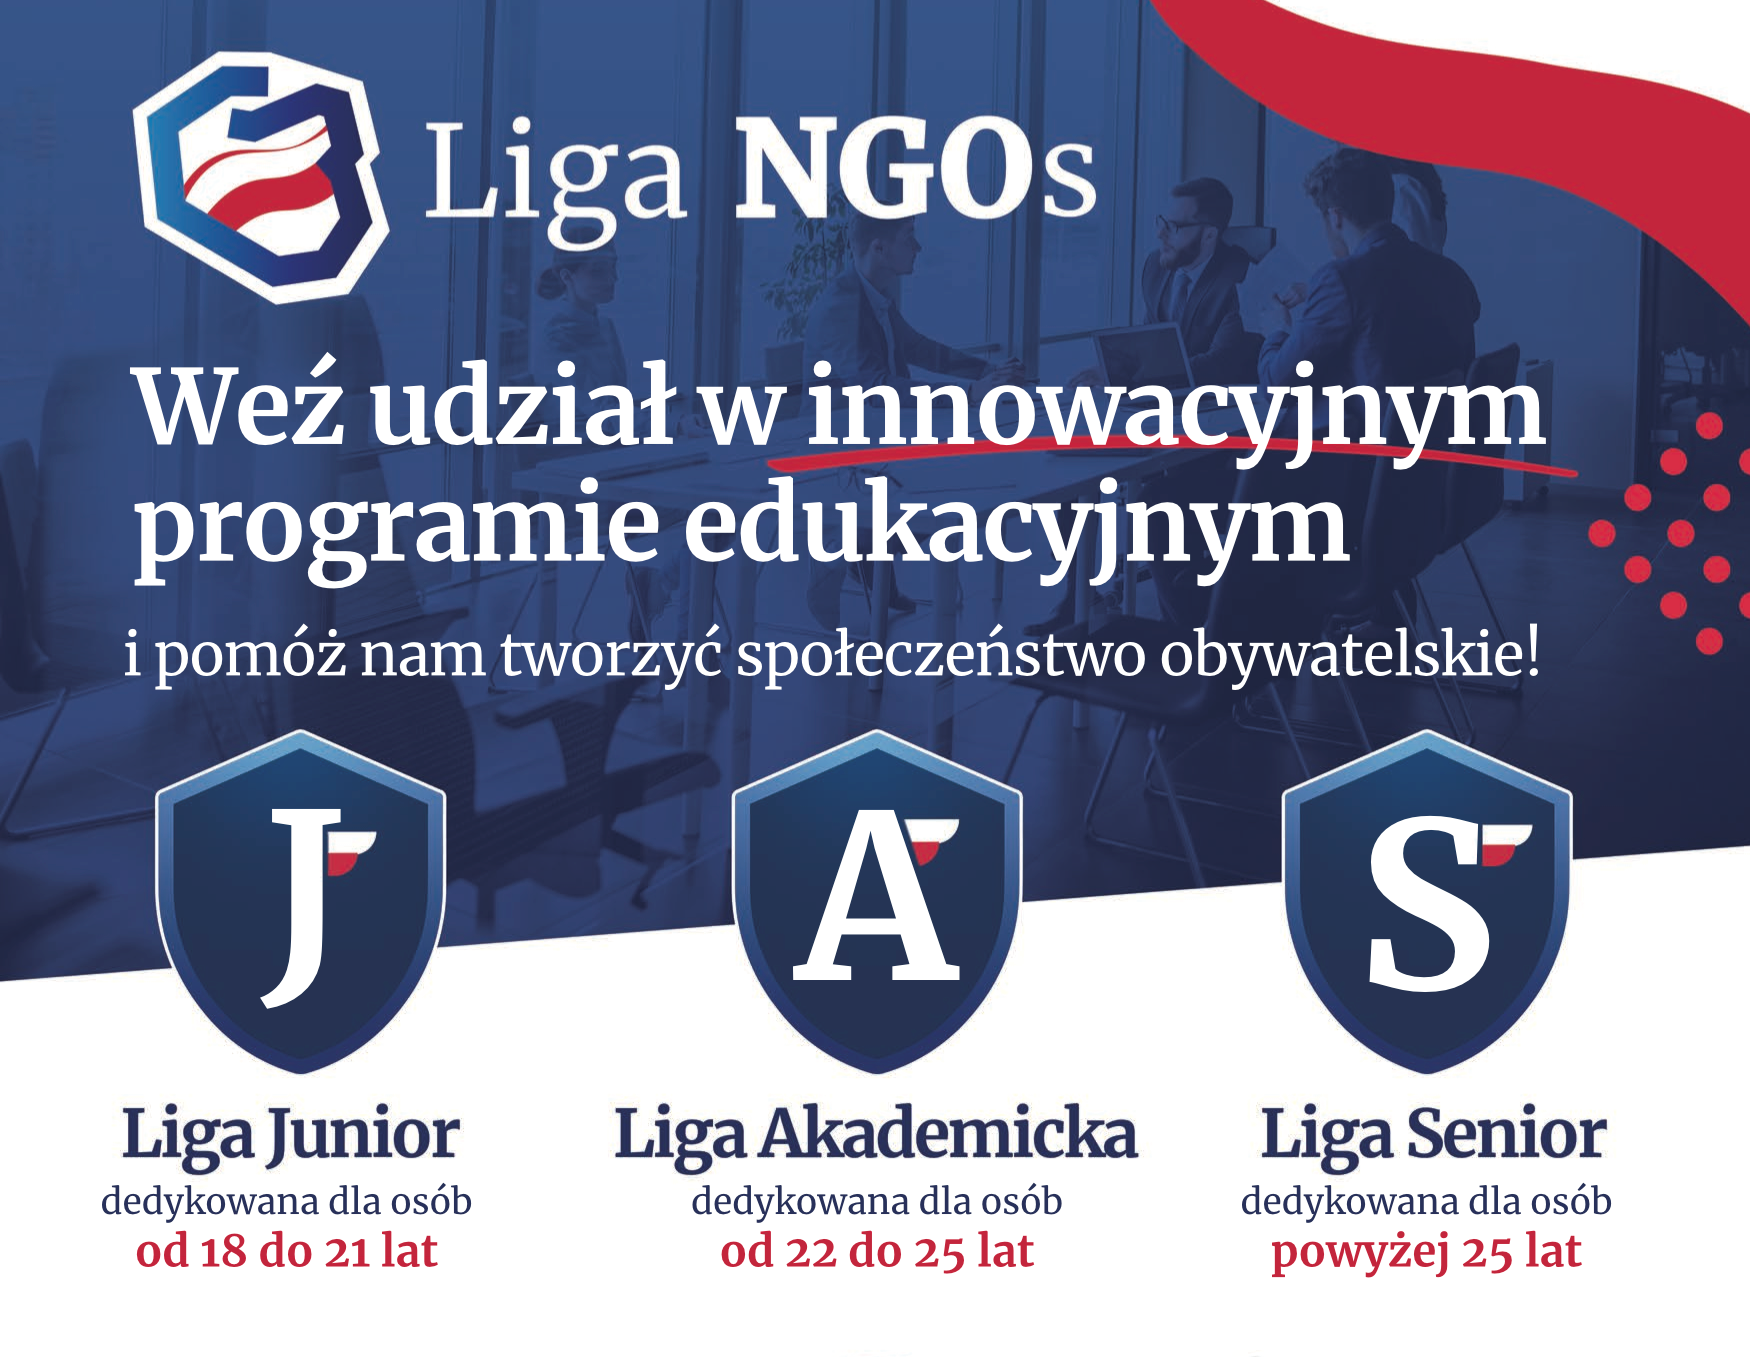 Ilustracja do artykułu Liga NGOs ulotka_przycięta.png